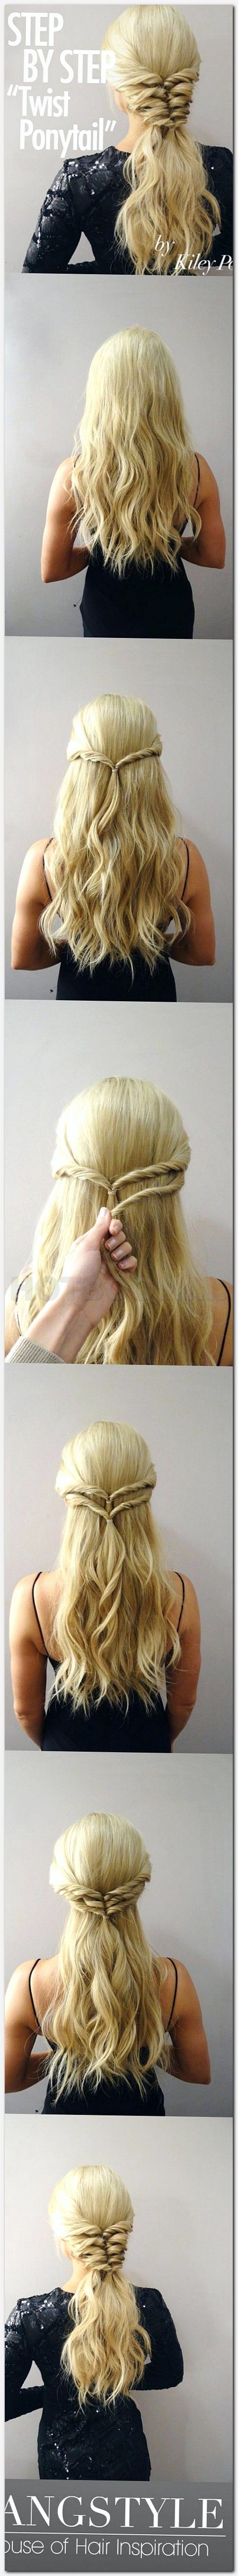 Bridesmaid hair idea